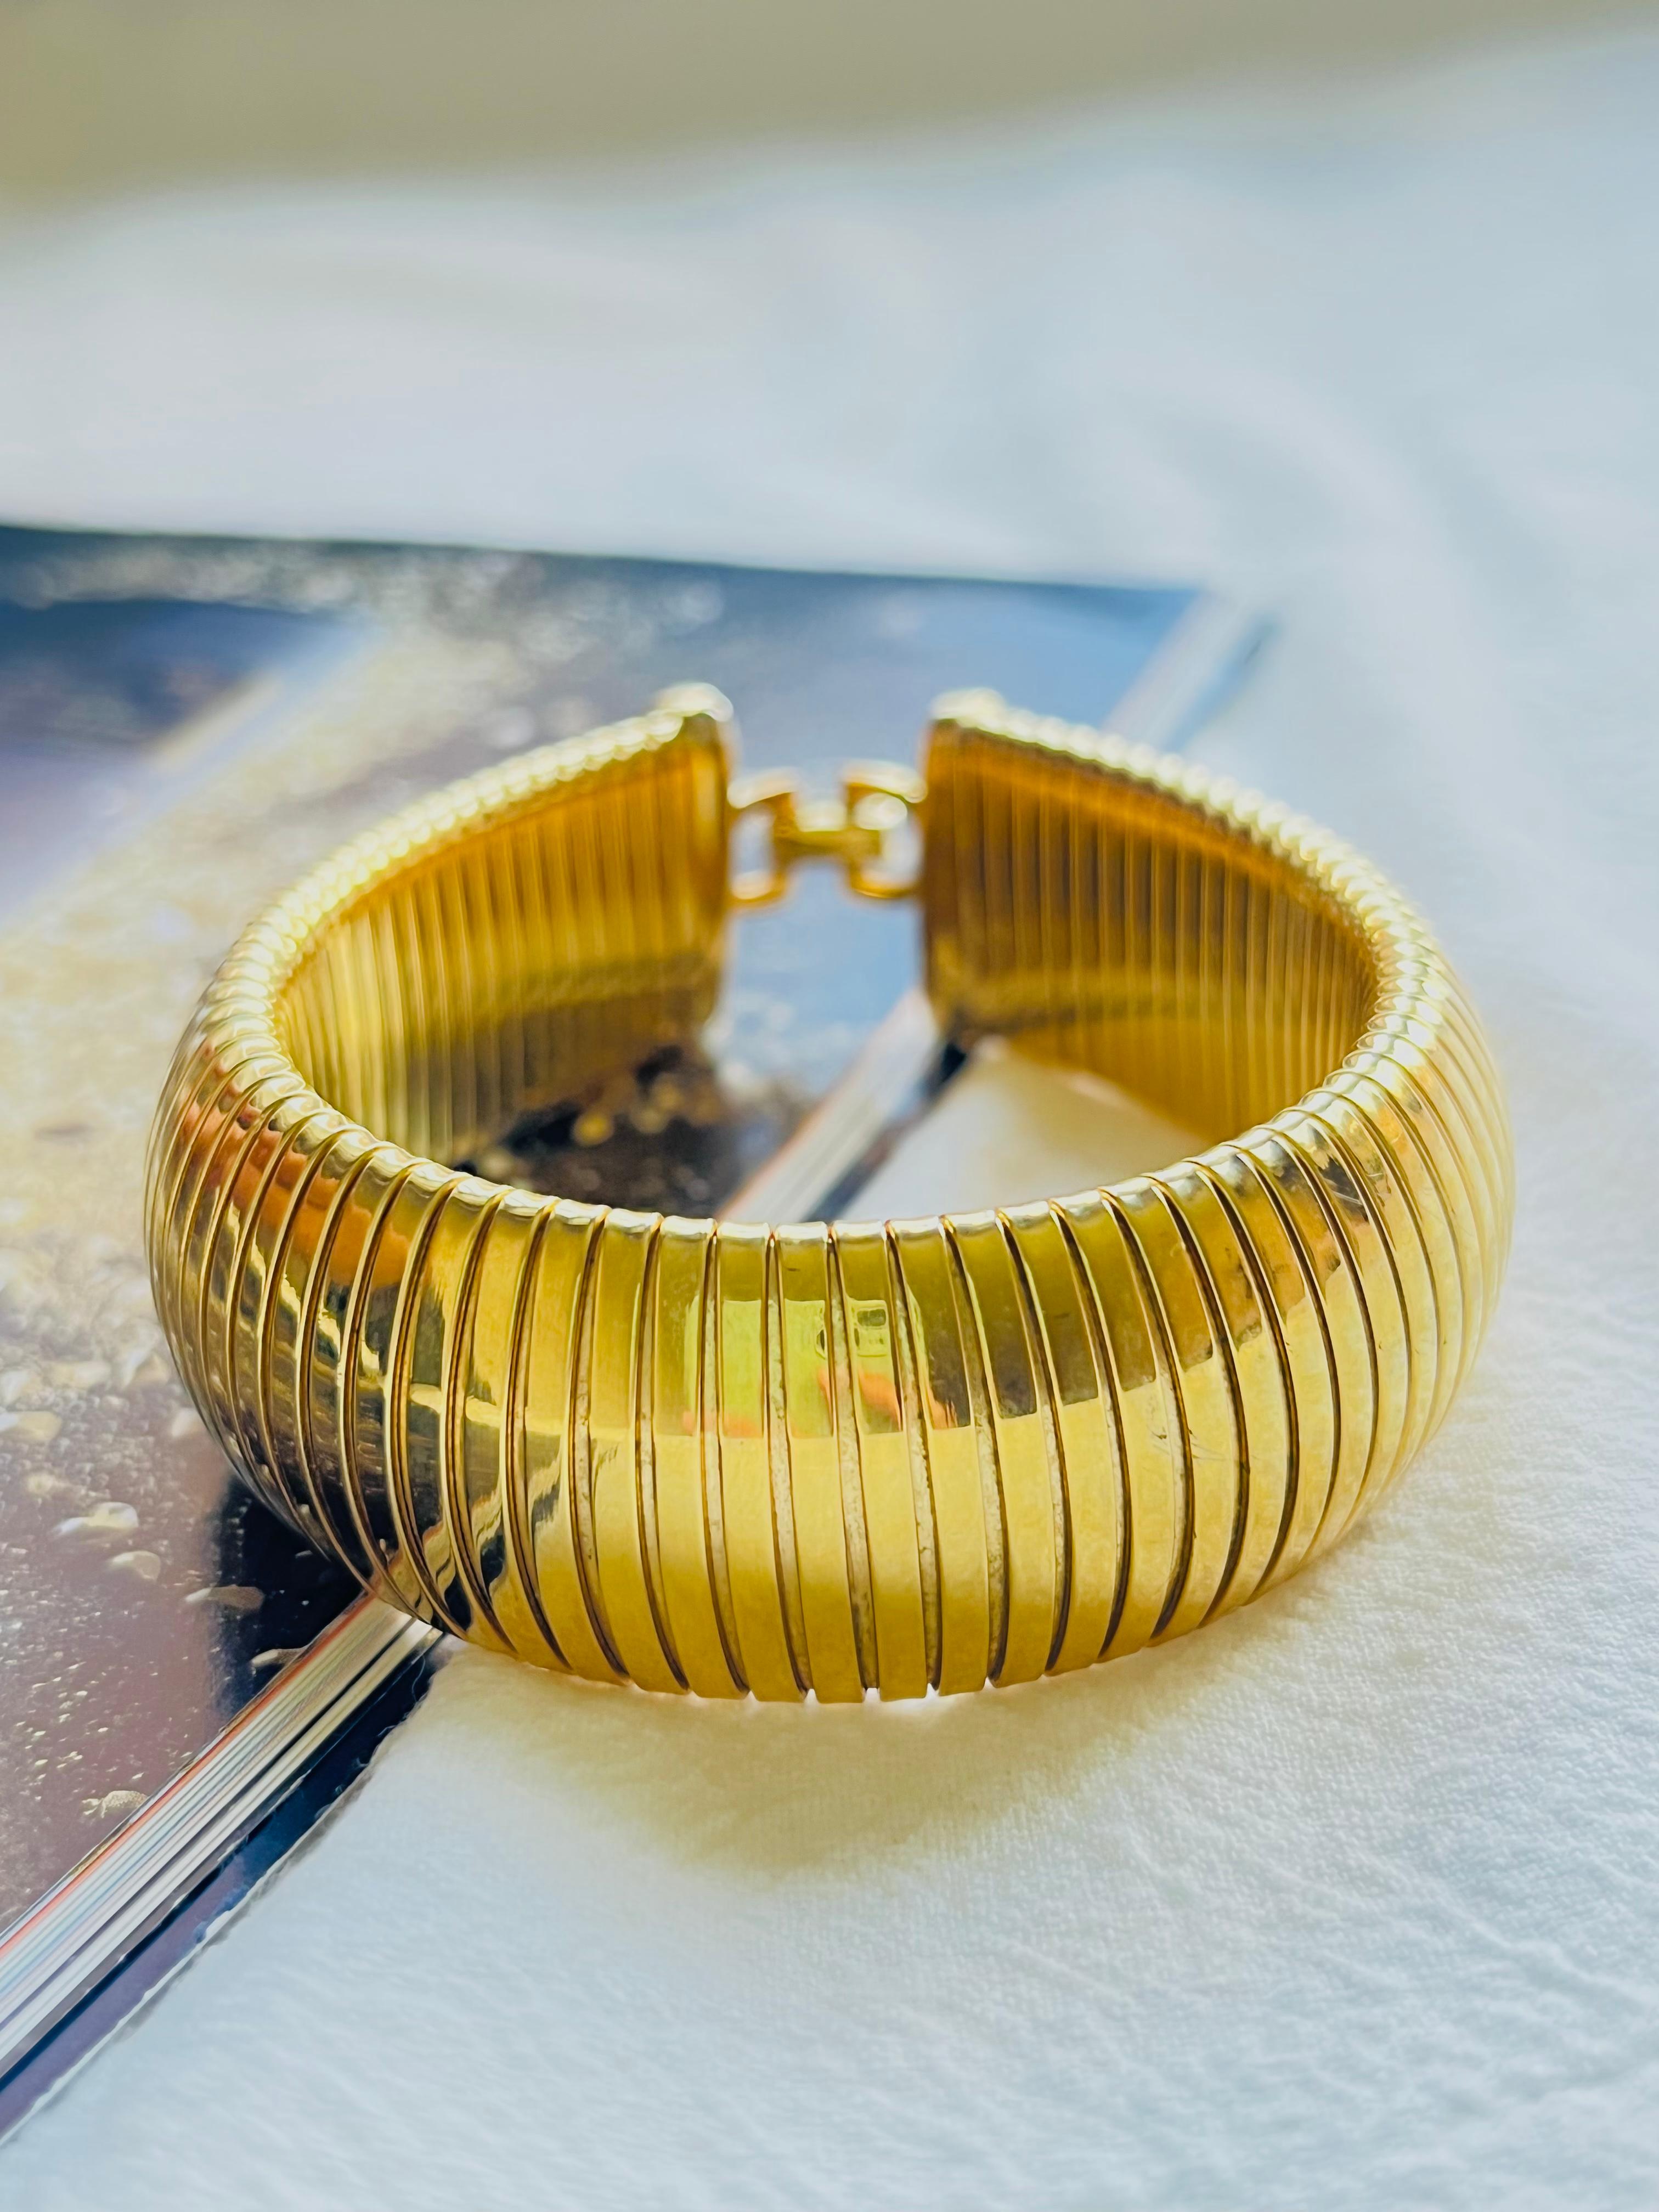 Christian Dior Vintage 1980s Unisex Extra breite gerippte Omega Schlange Manschette Armband, Gold-Ton

Sehr guter Zustand. Leichte Kratzer oder Farbverluste, kaum wahrnehmbar. 100% echt.

Dieses kreisförmige Armband von Christian Dior ist aus